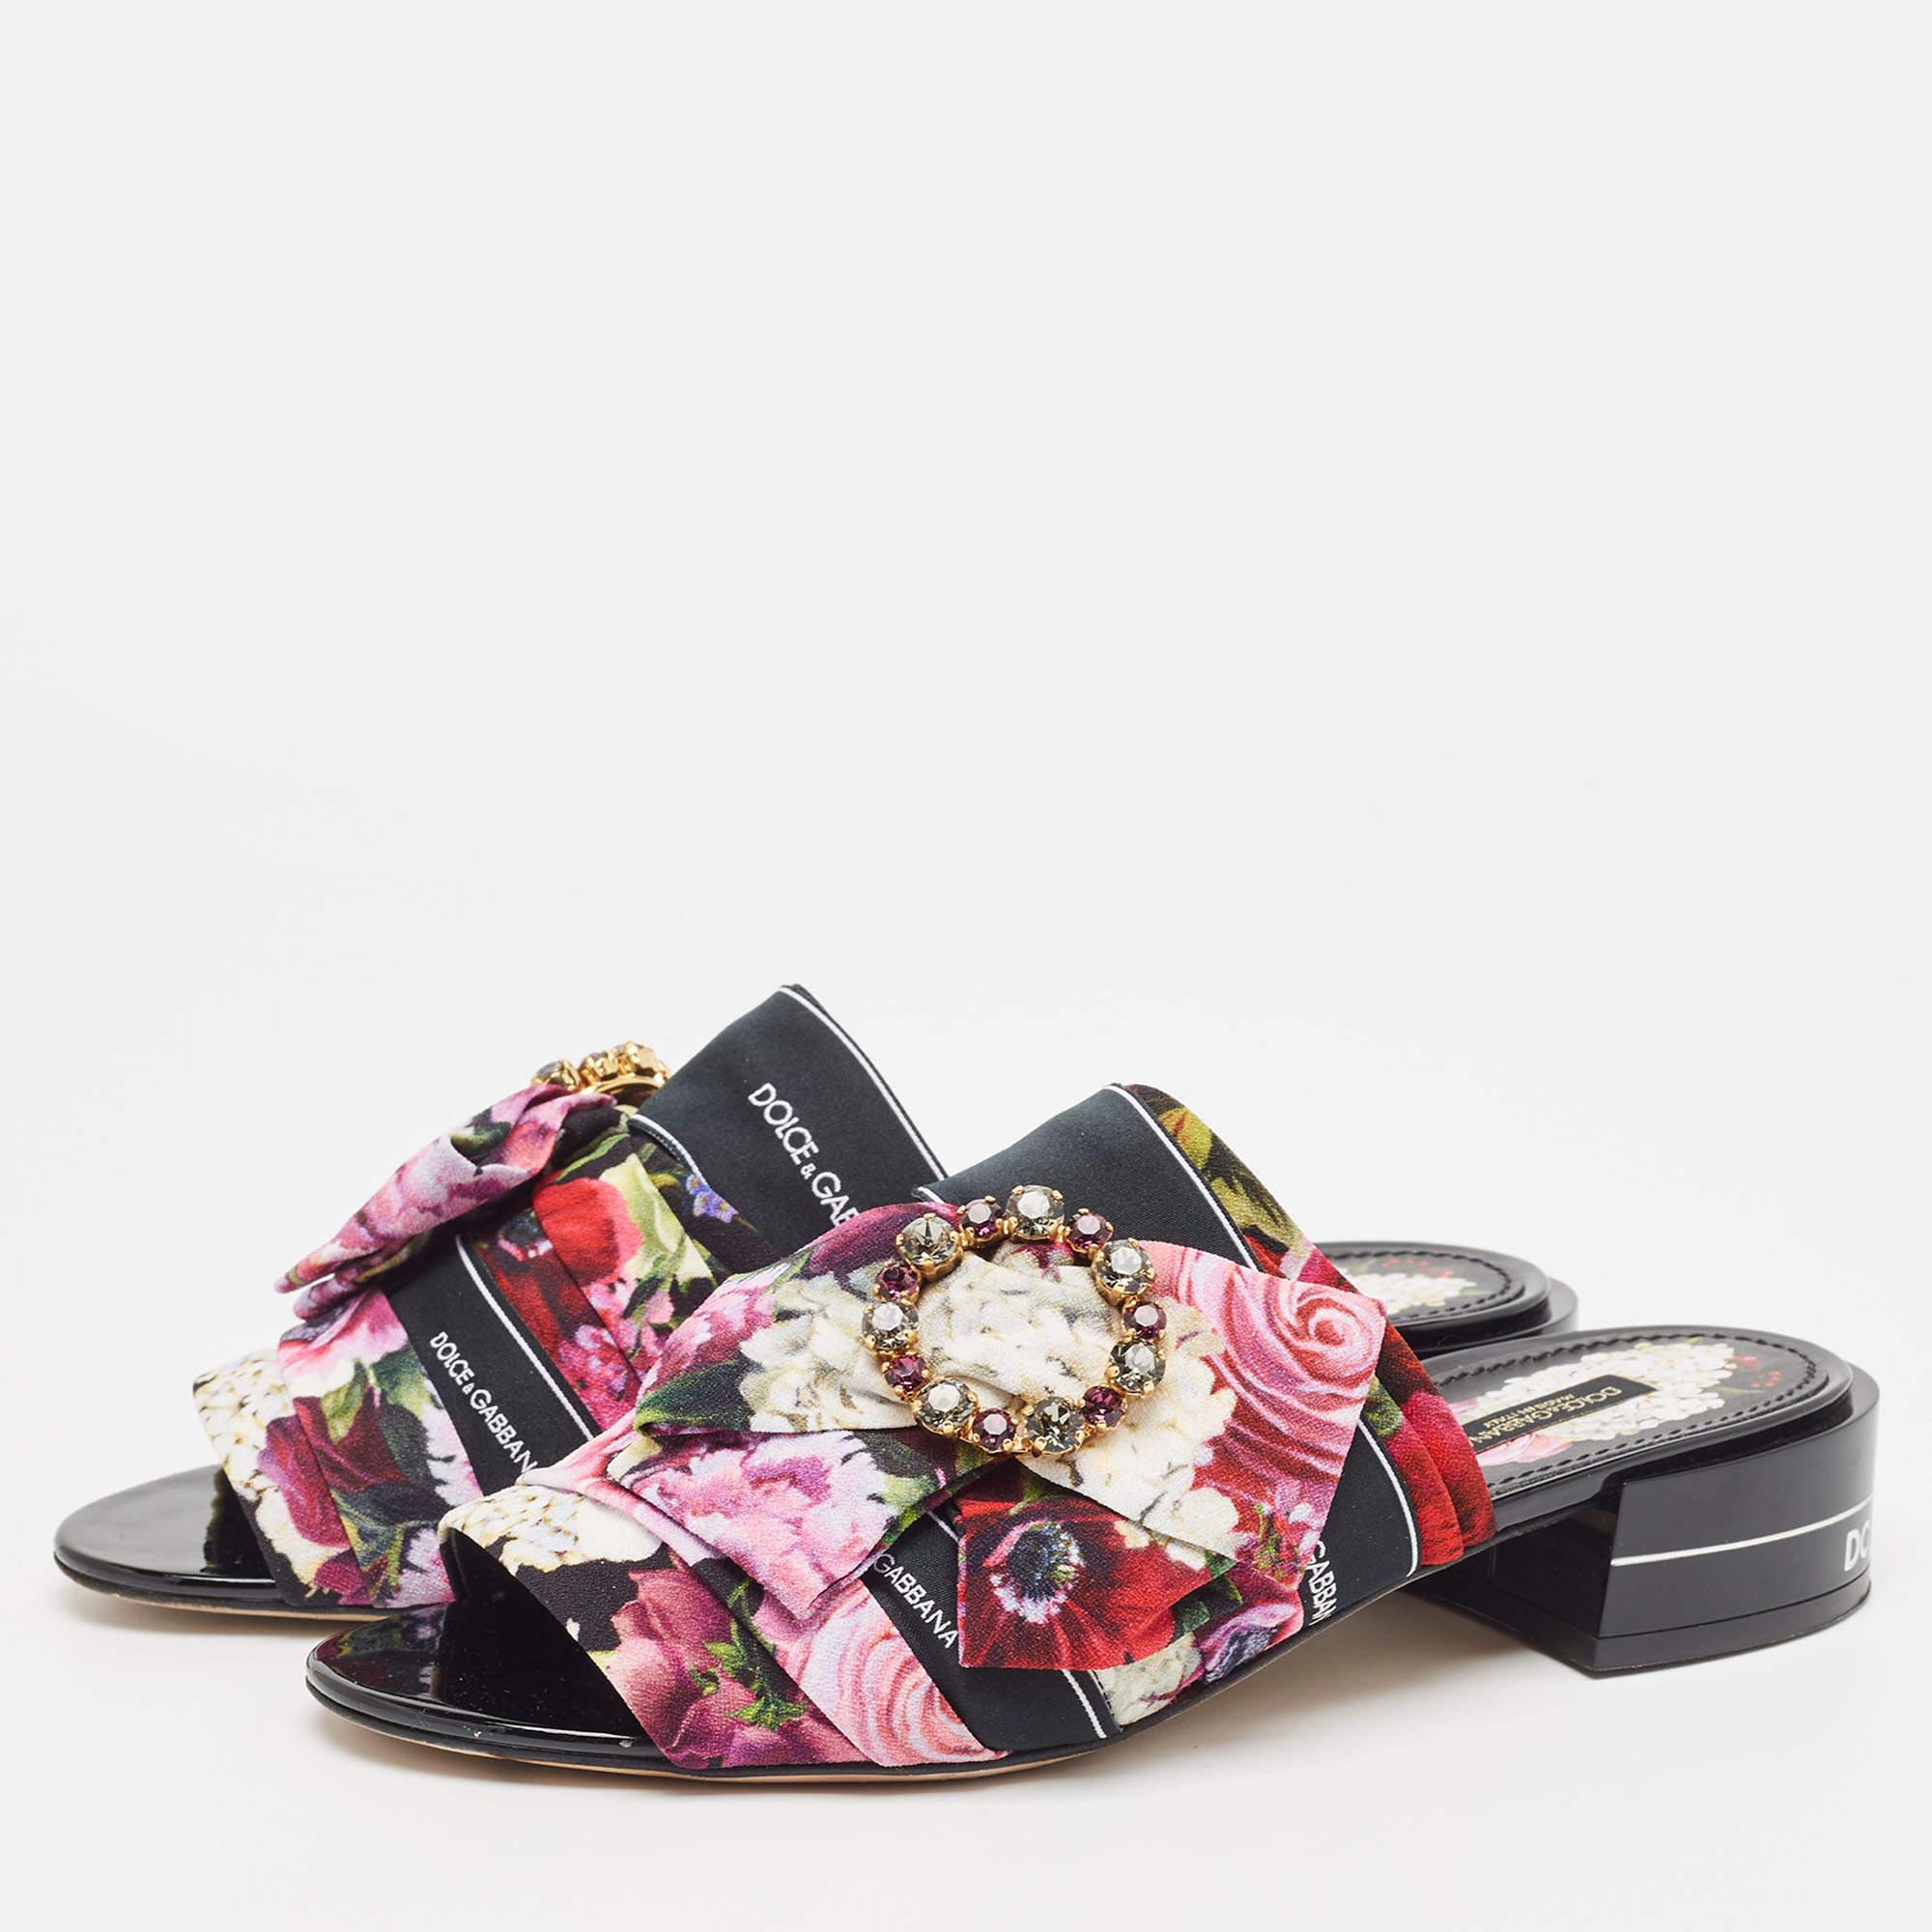 Dolce & Gabbana Multicolor Floral Print Fabric Embellished Slide Sandals Size 39 1